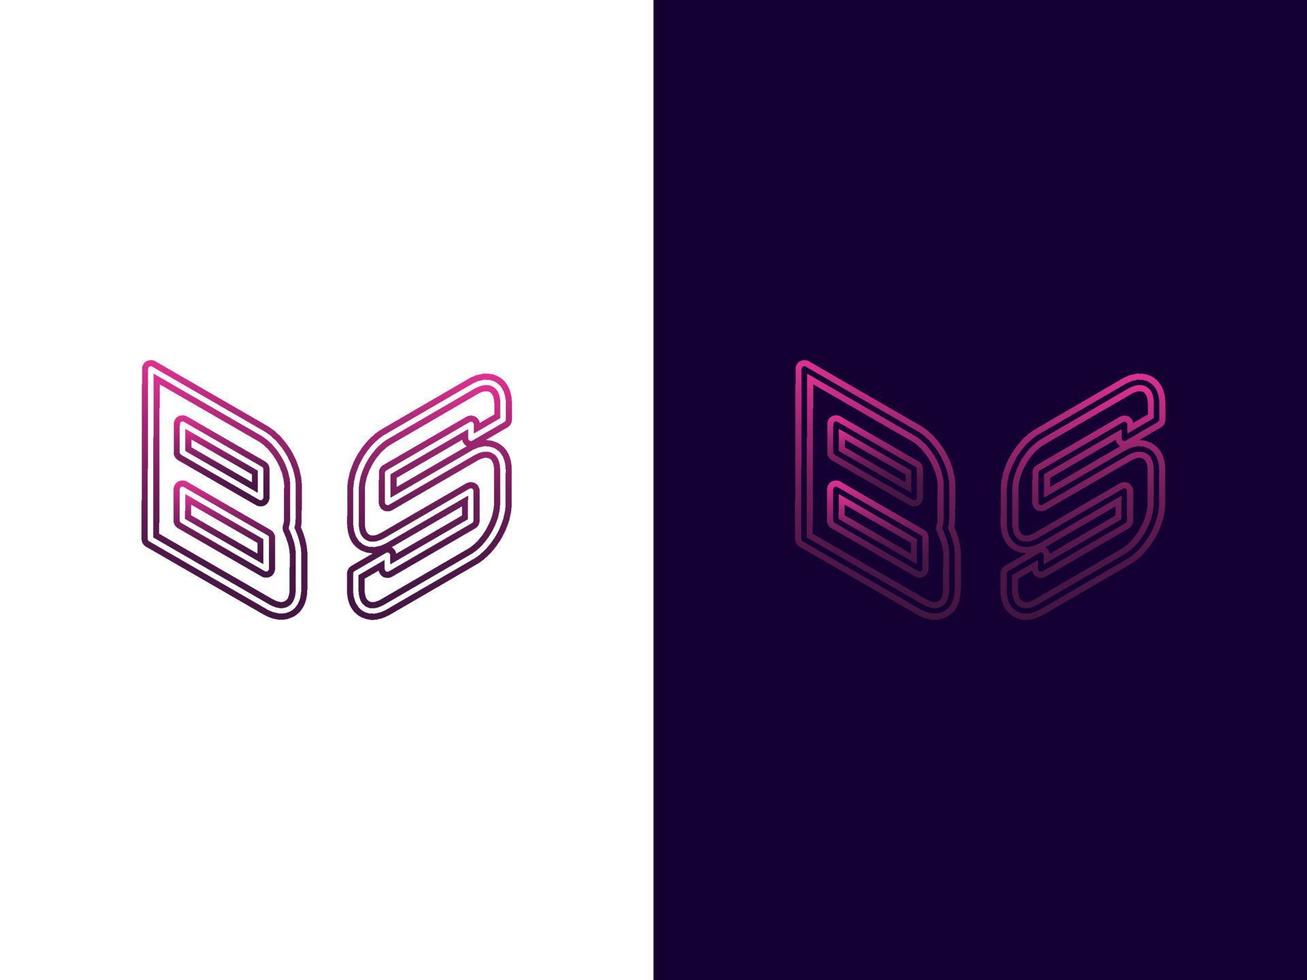 letra inicial b diseño de logotipo 3d minimalista y moderno vector